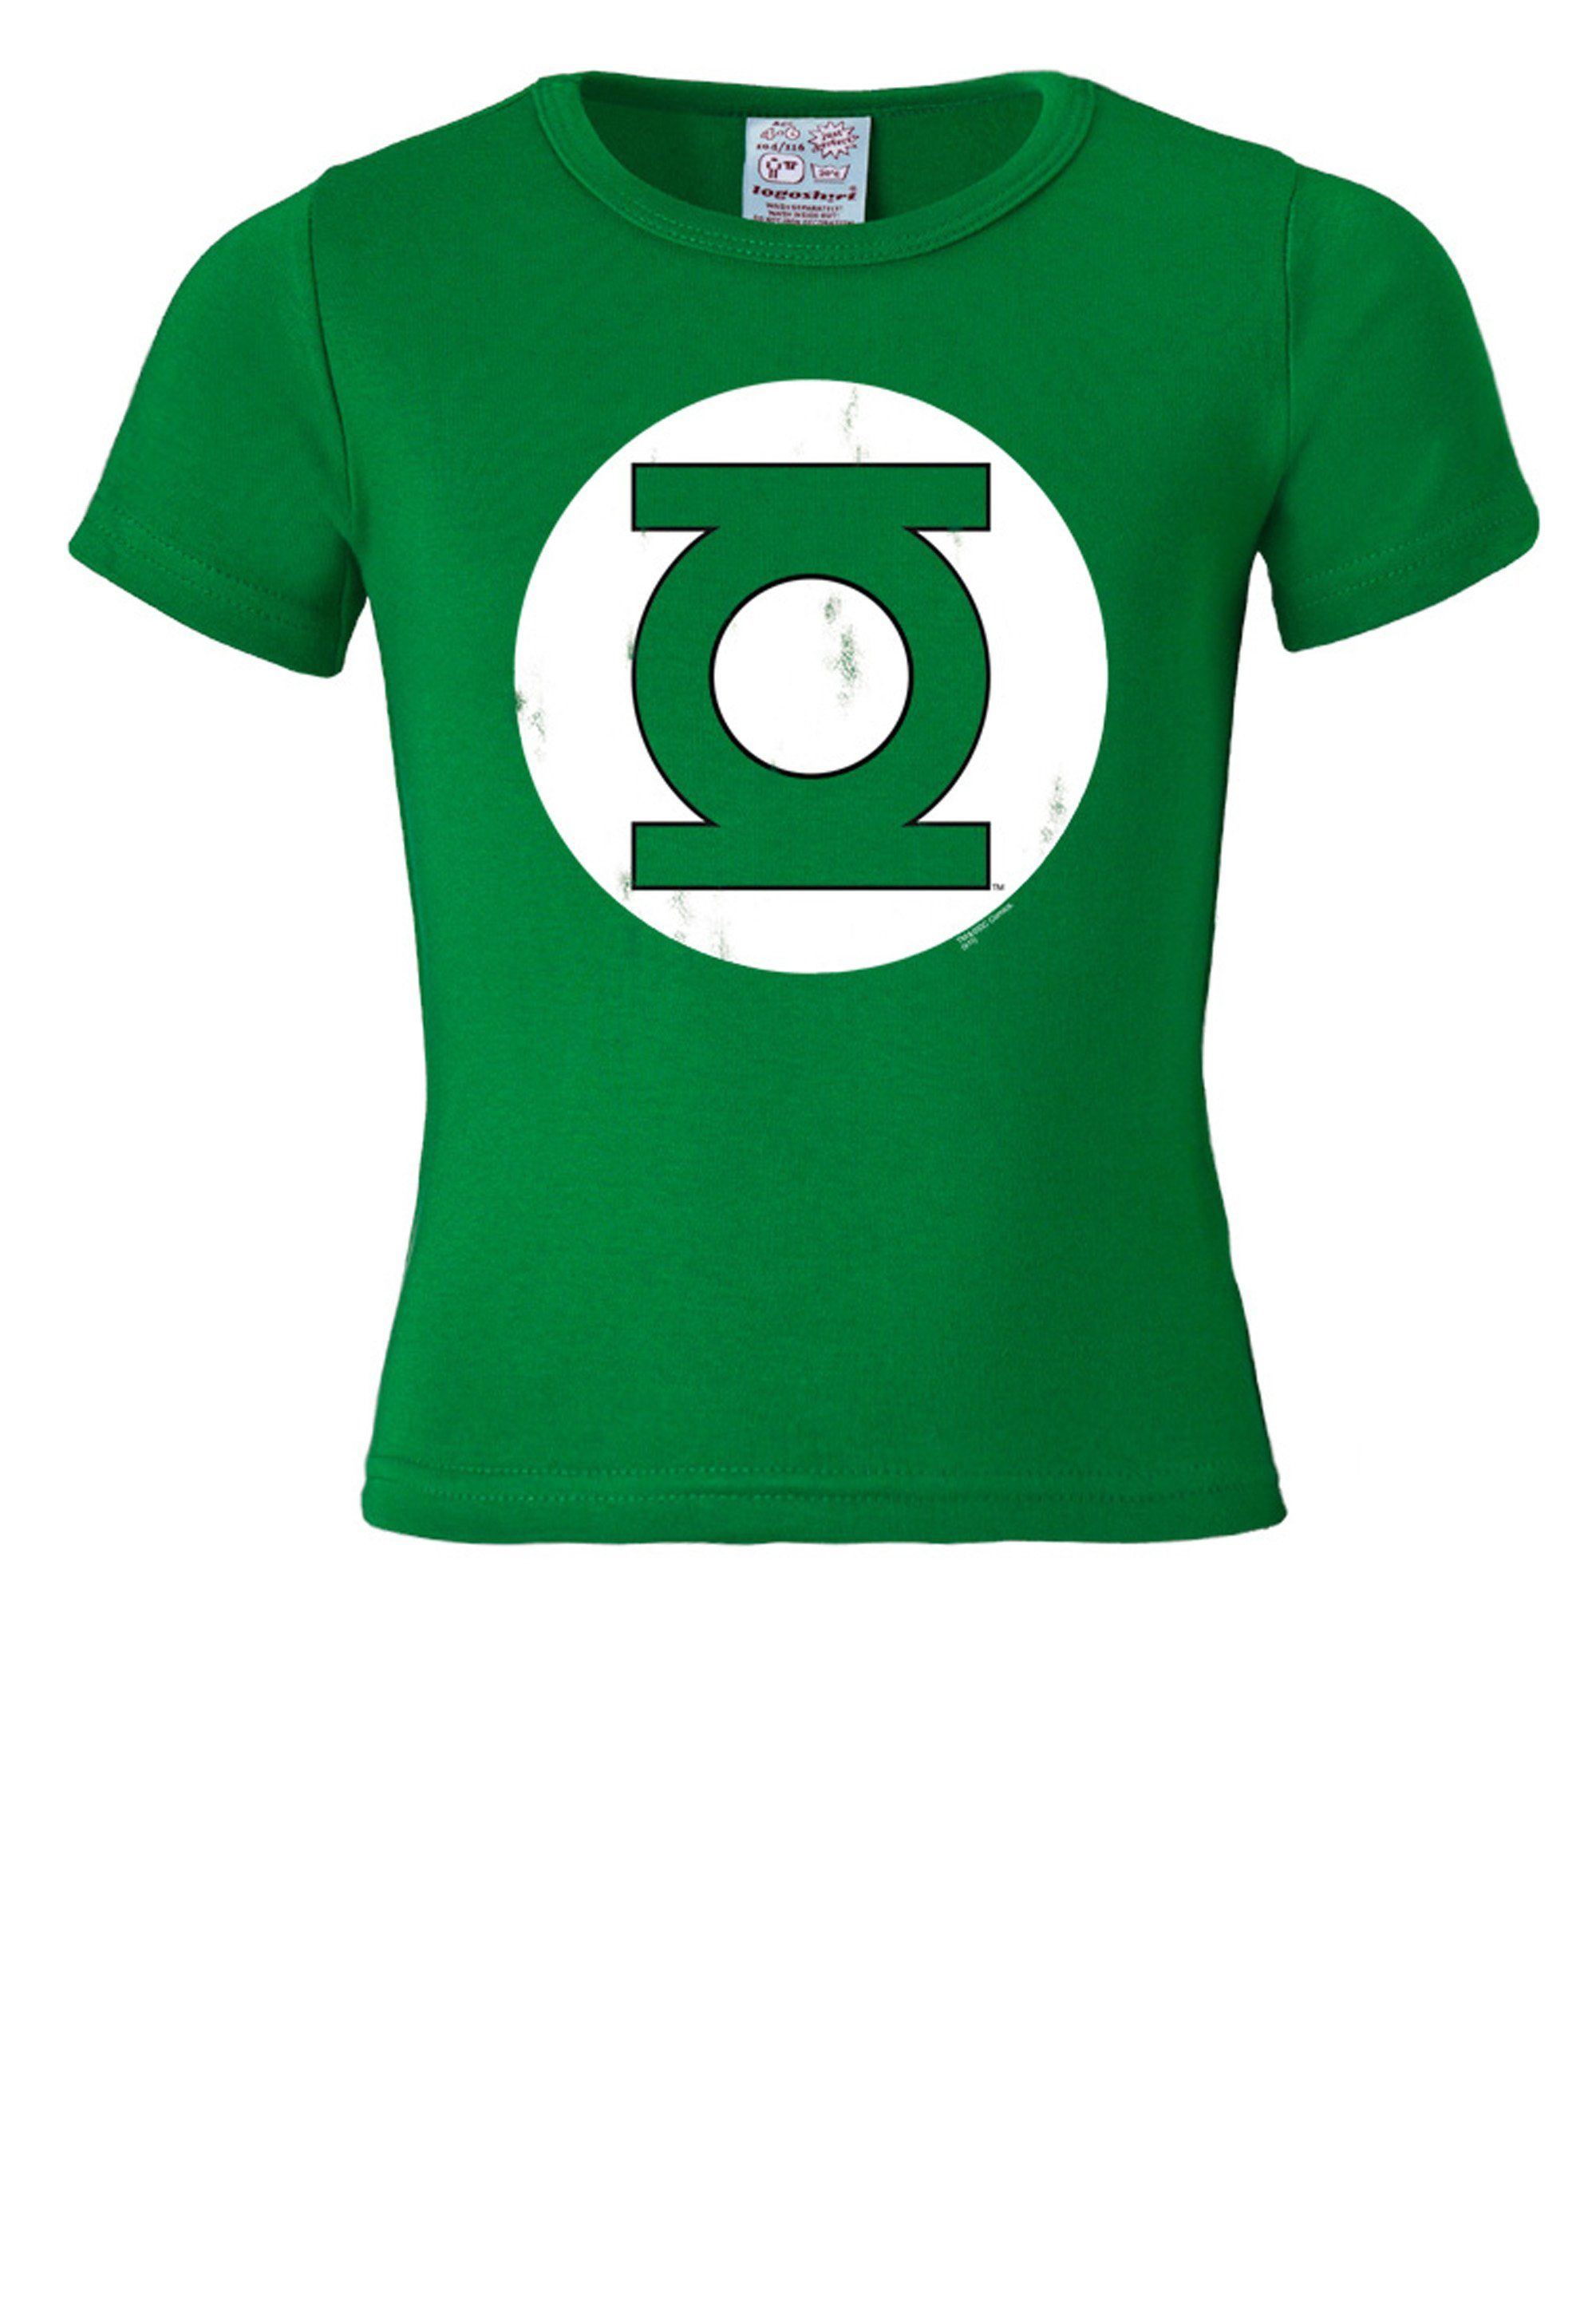 LOGOSHIRT T-Shirt Frontprint mit Green coolem Lantern